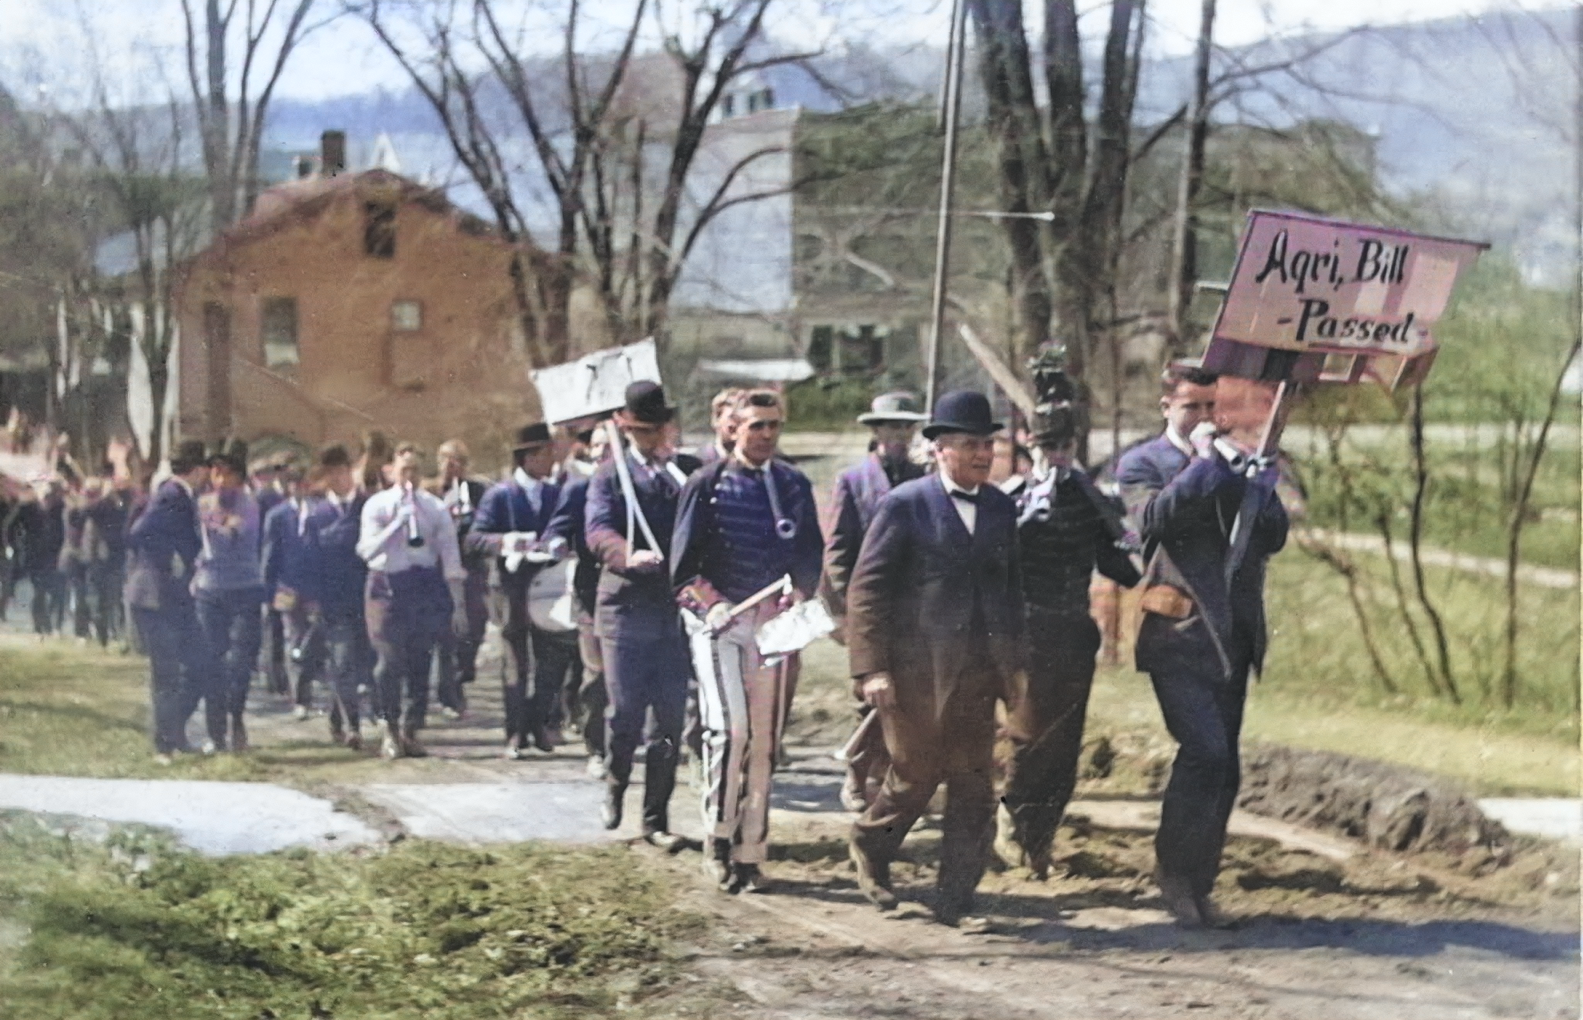 Village parade in 1908